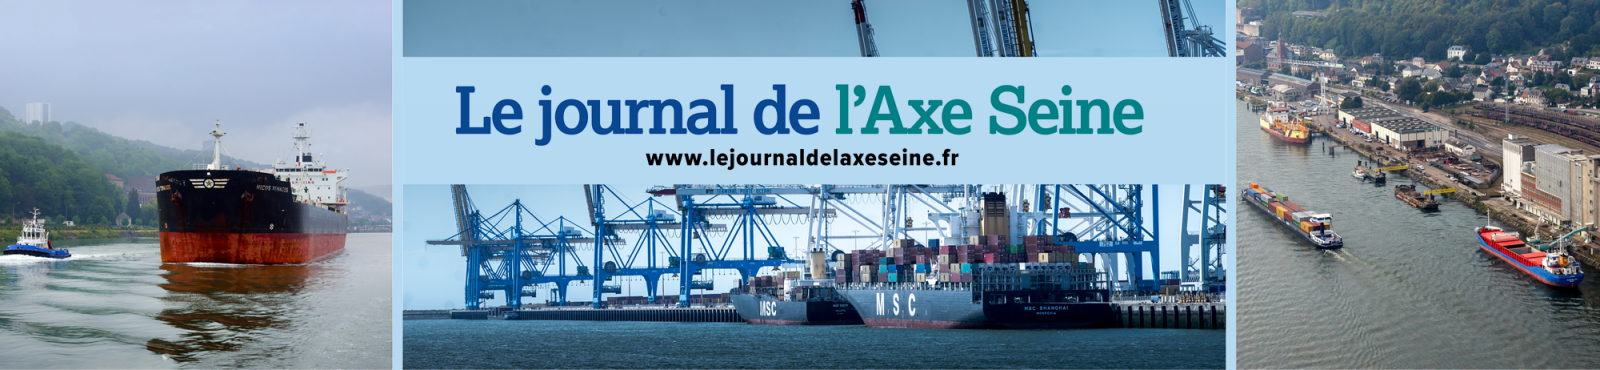 Le Journal de l'Axe Seine